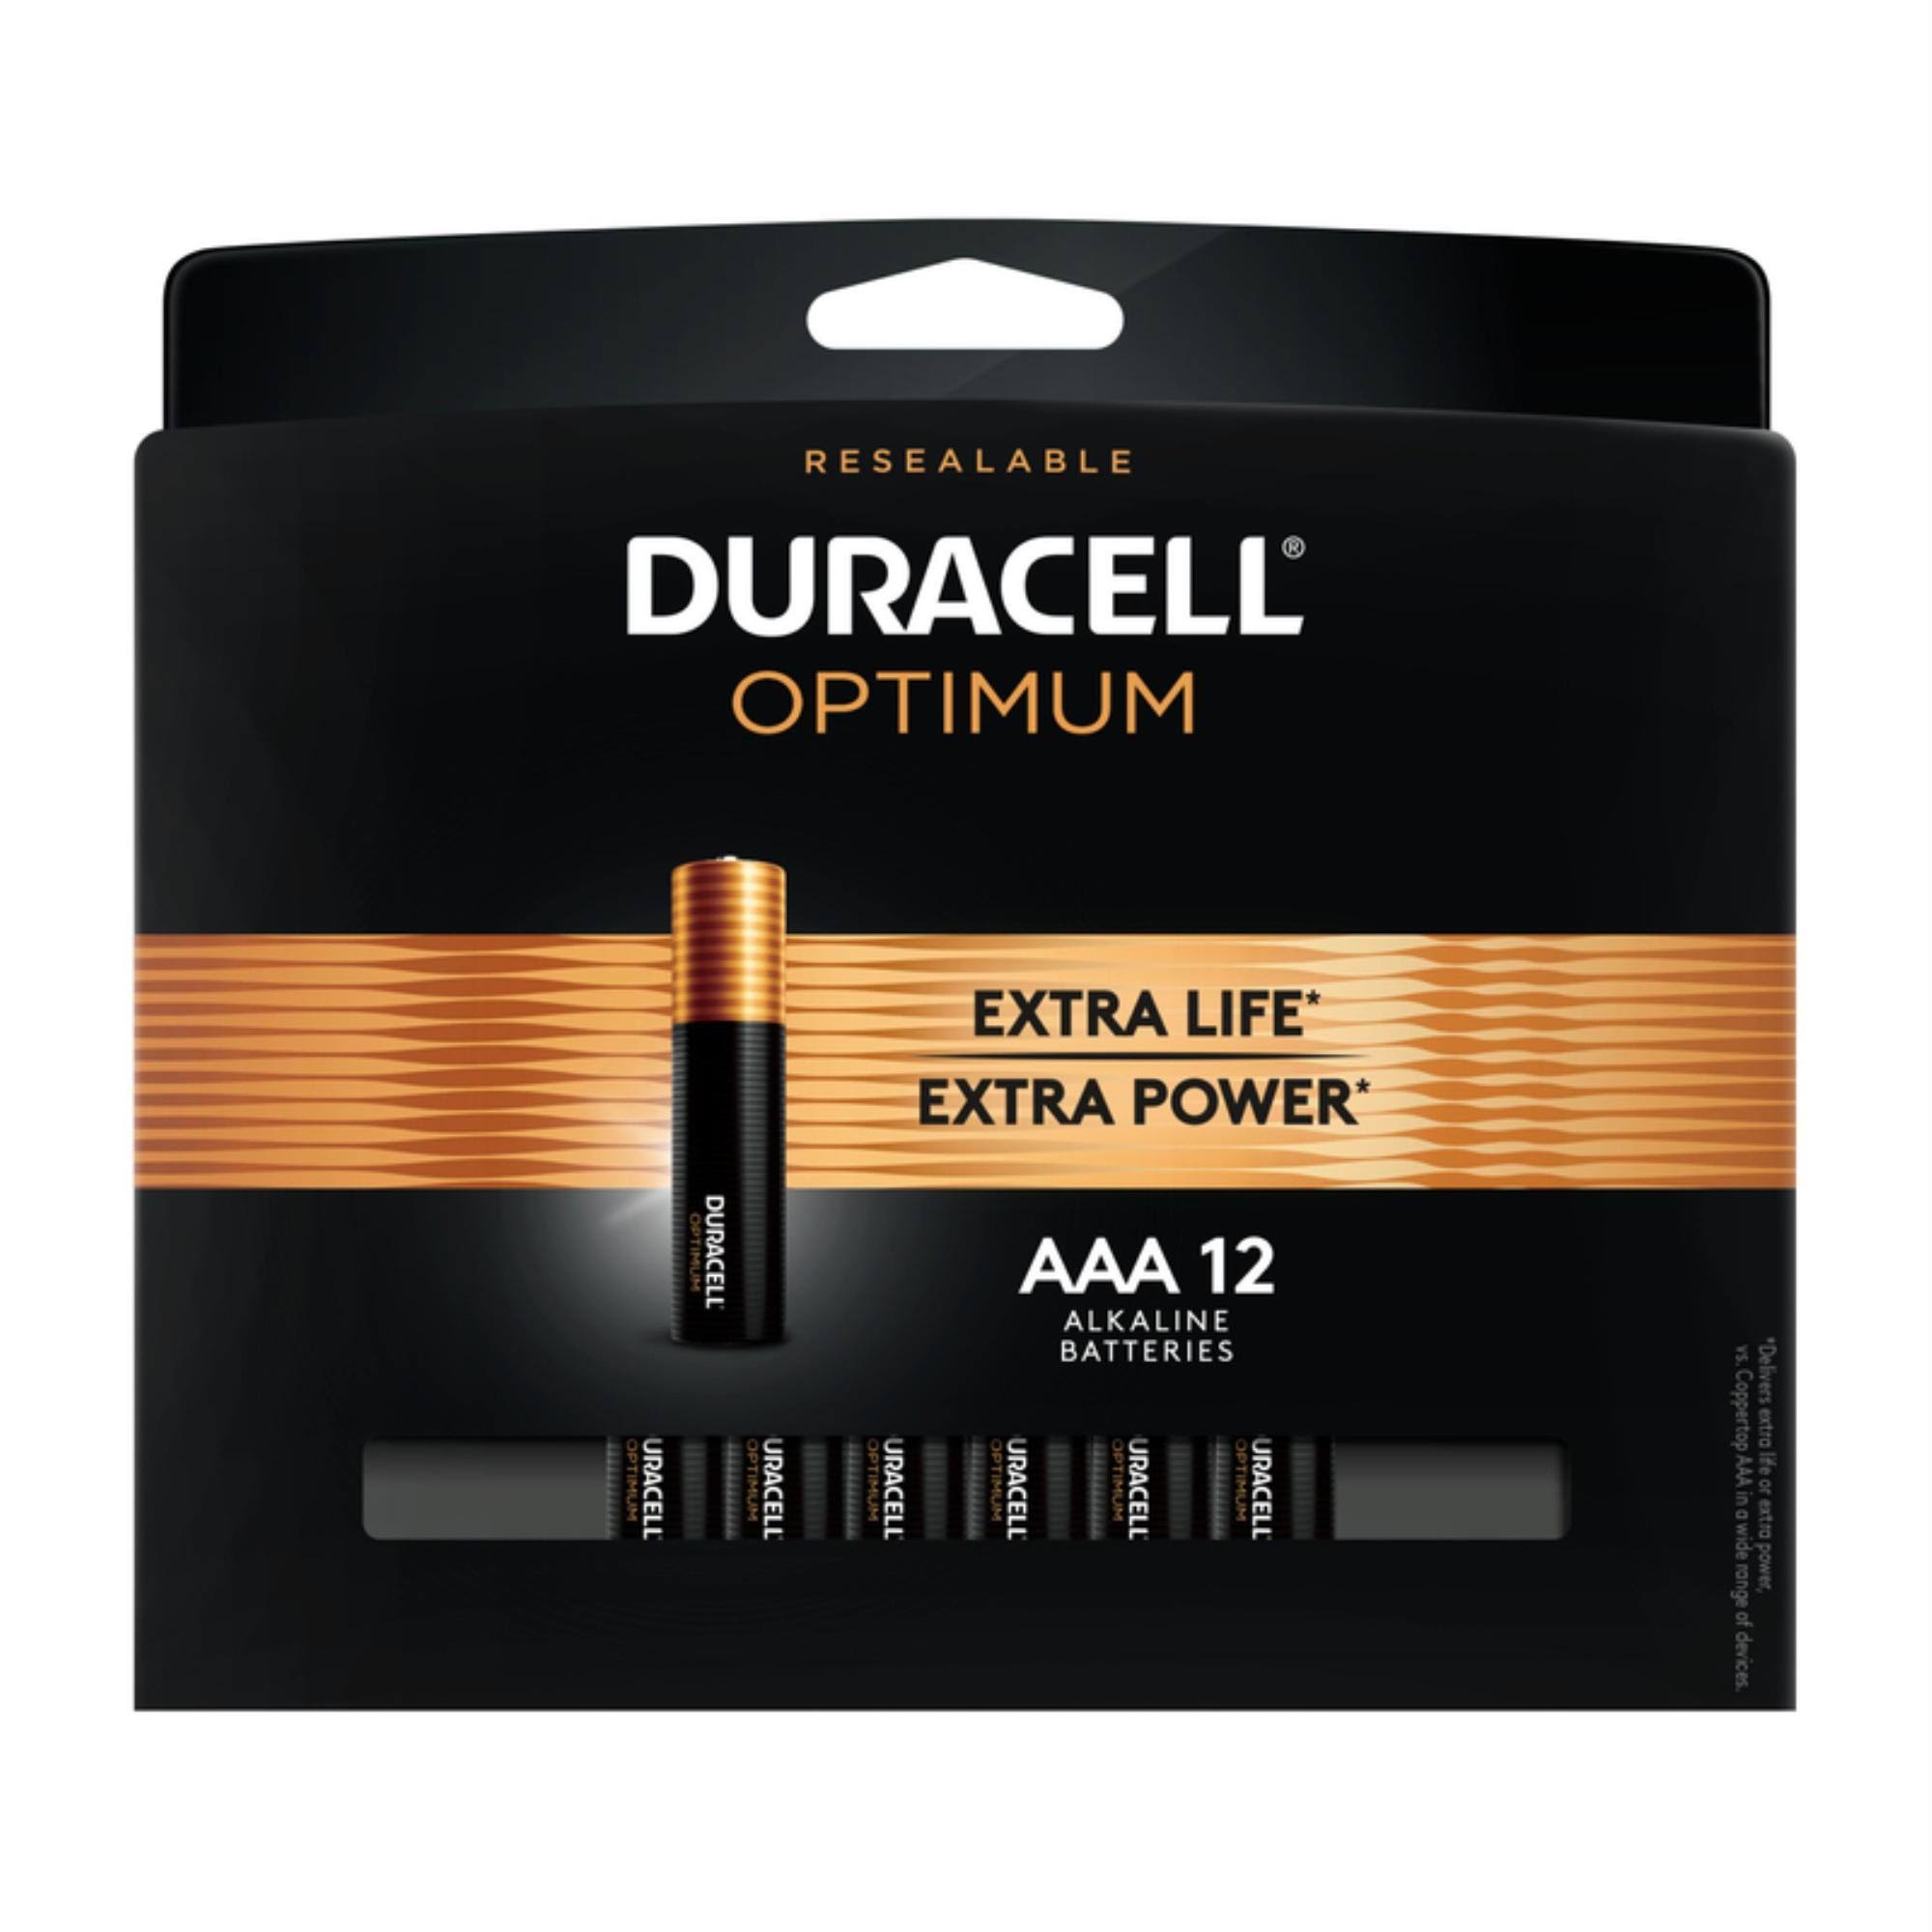 Duracell Optimum AAA Alkaline Battery - 12 Pack